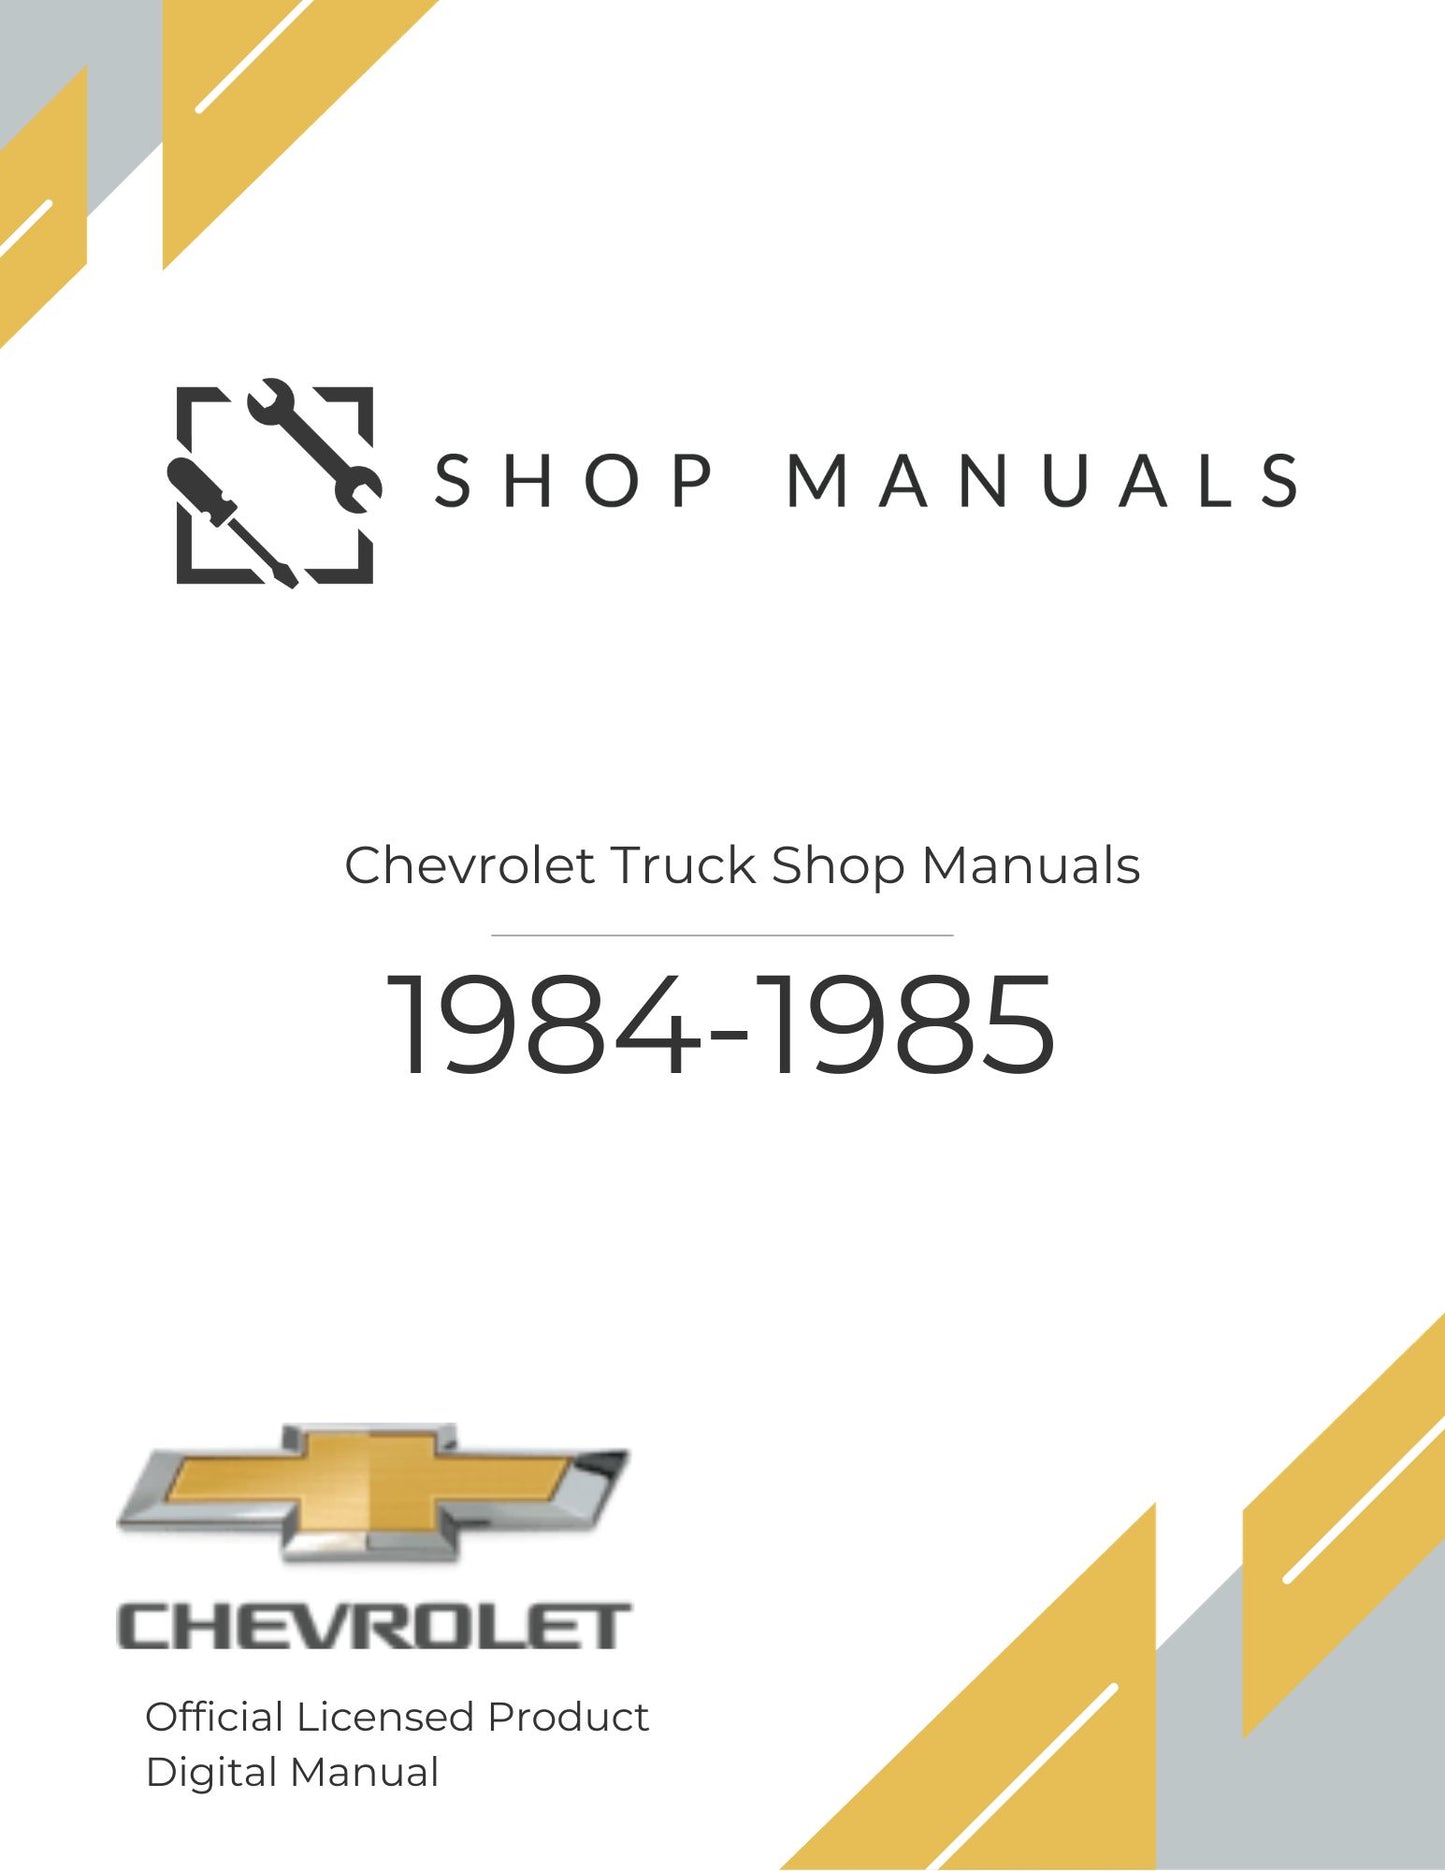 1984-1985 Chevrolet Truck Shop Manuals